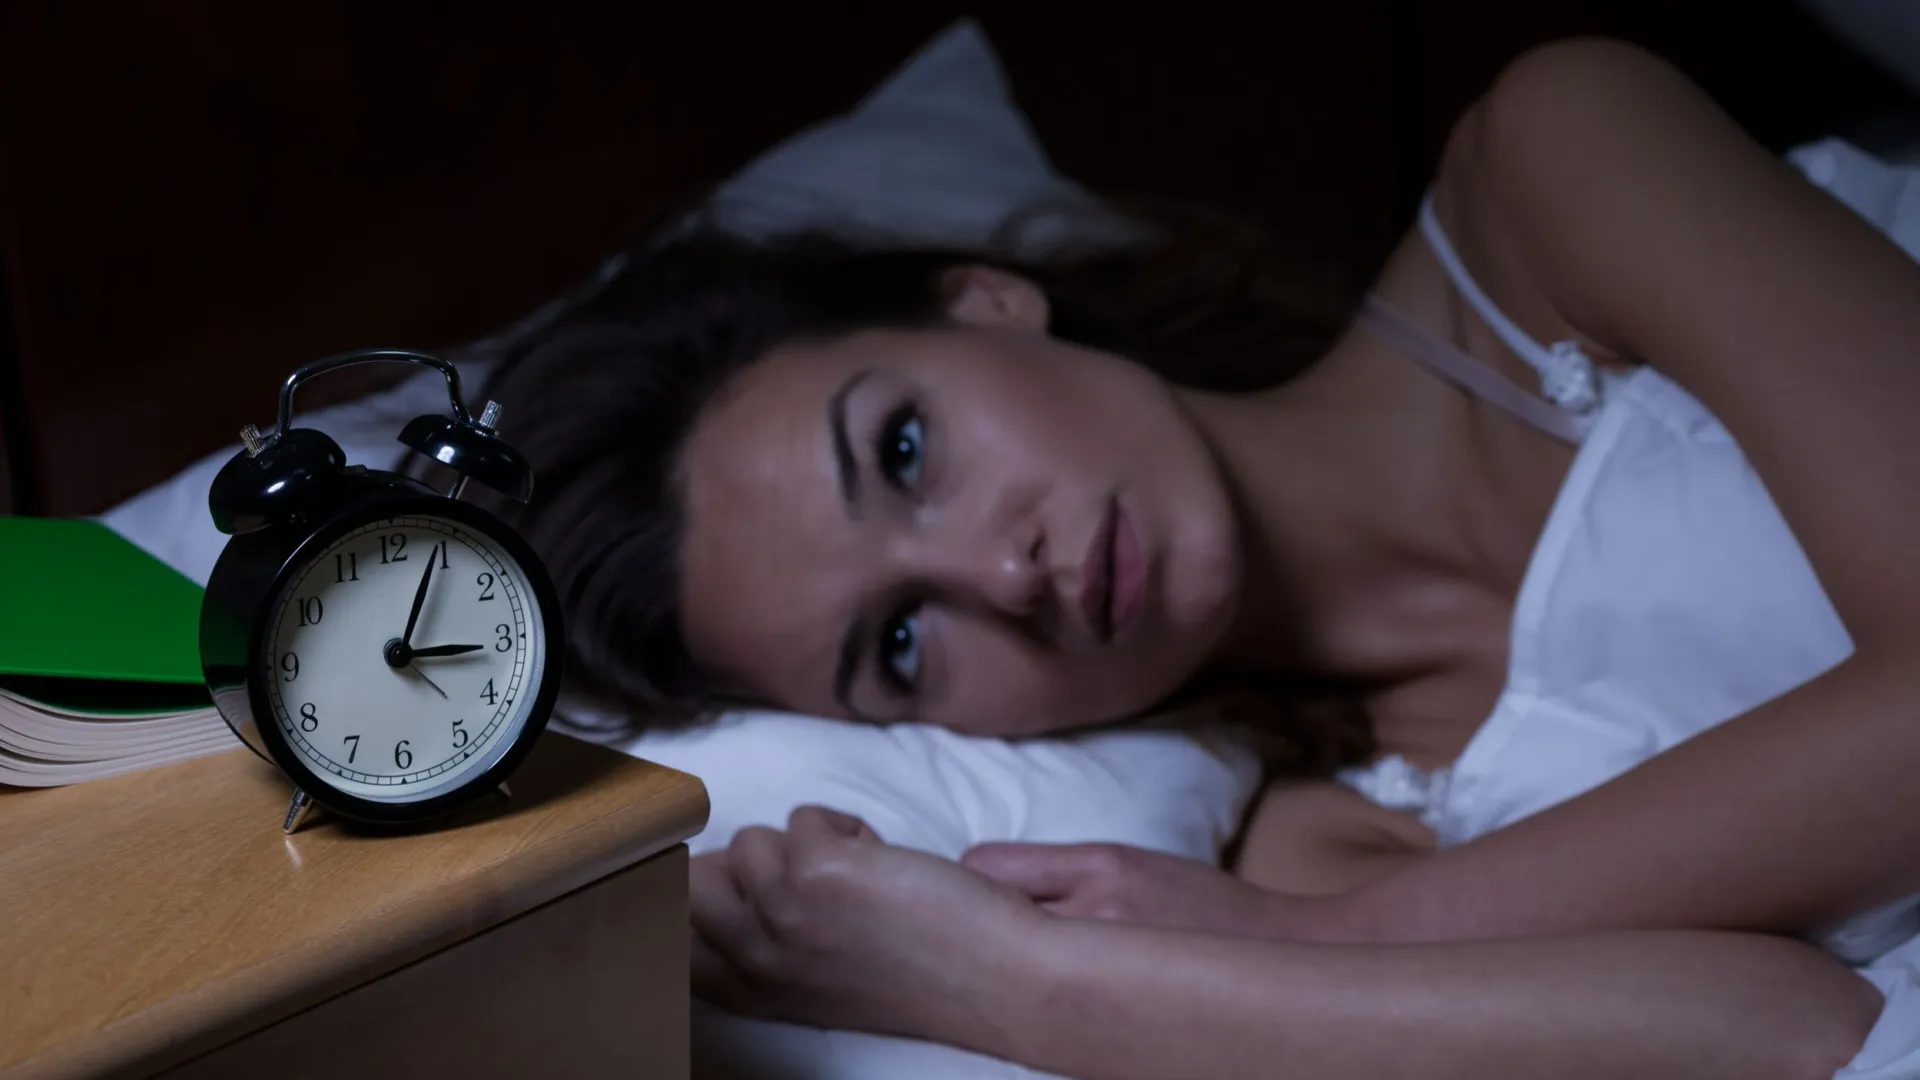 Проблемы со сном — лишь одно из последствий «избыточного мышления». Фото: Ground Picture / Shutterstock / Fotodom